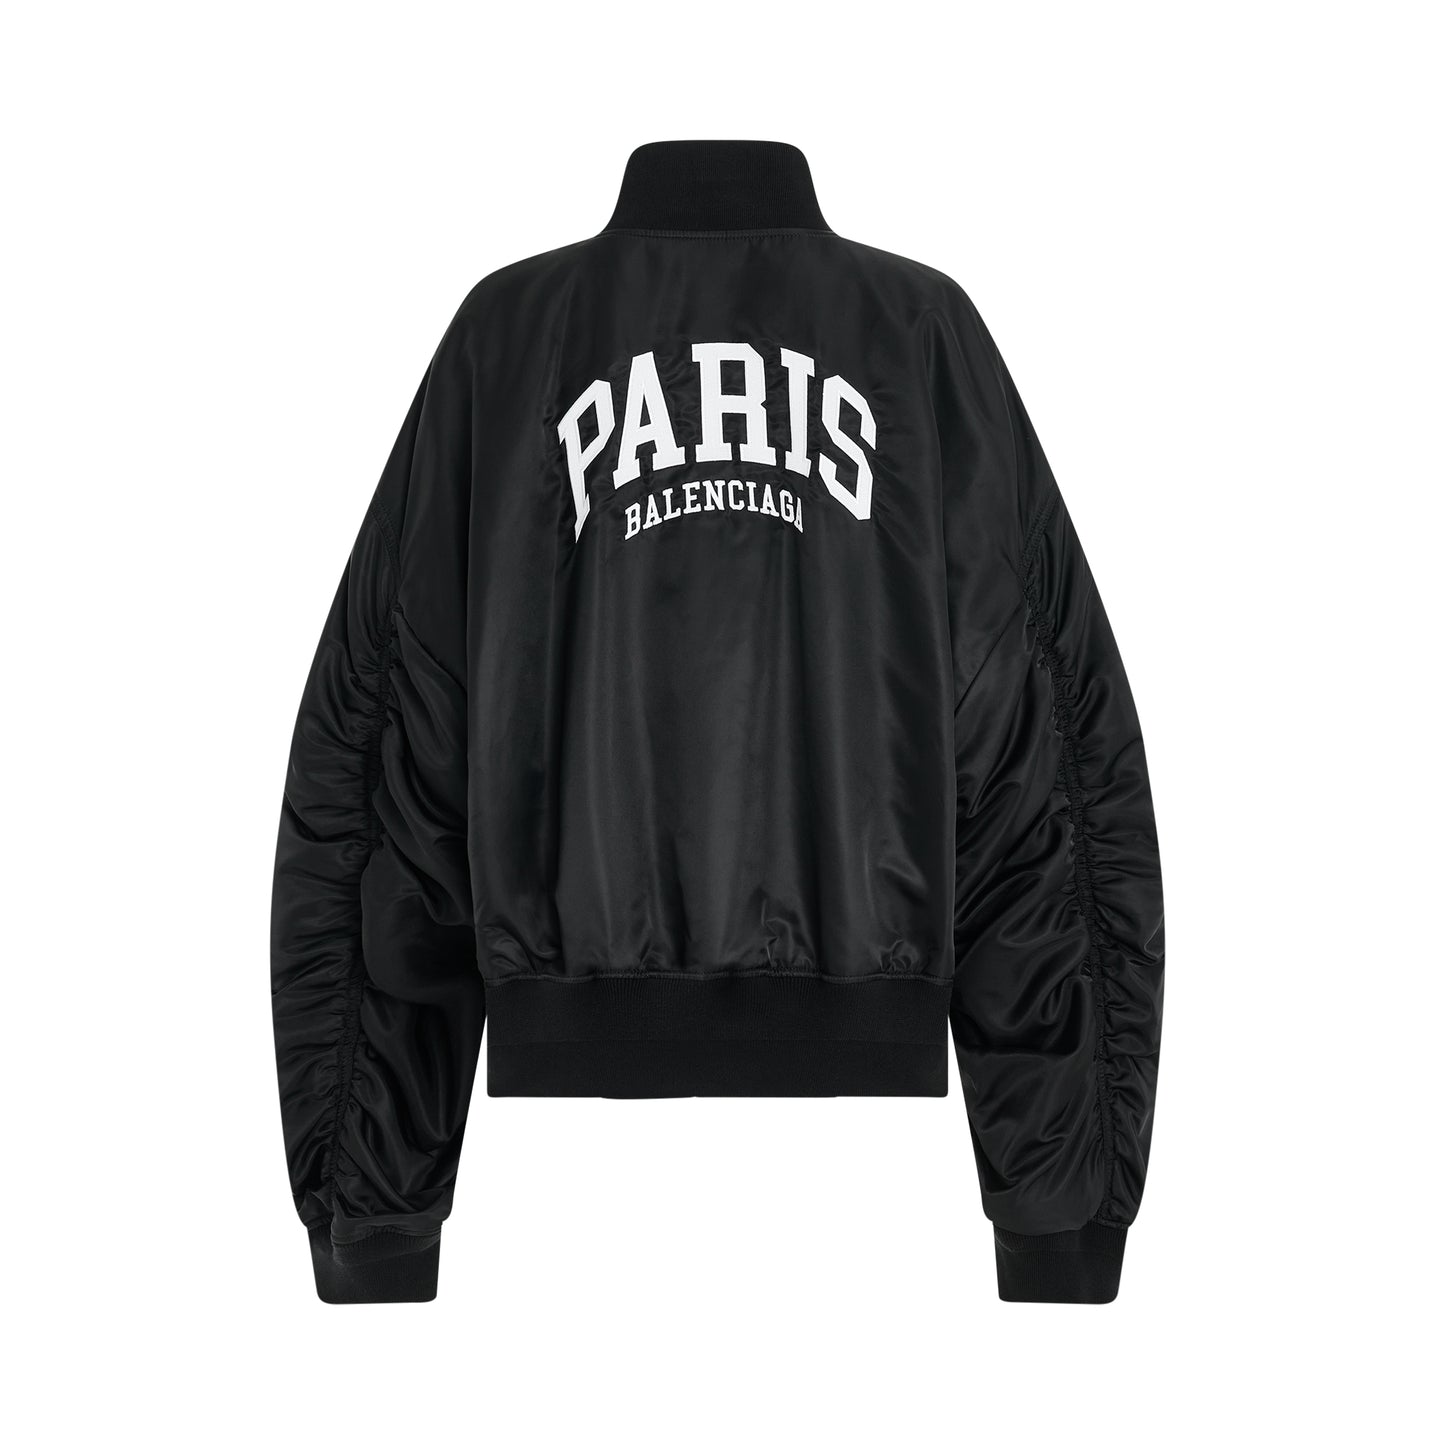 Paris Light Varsity Jacket in Black